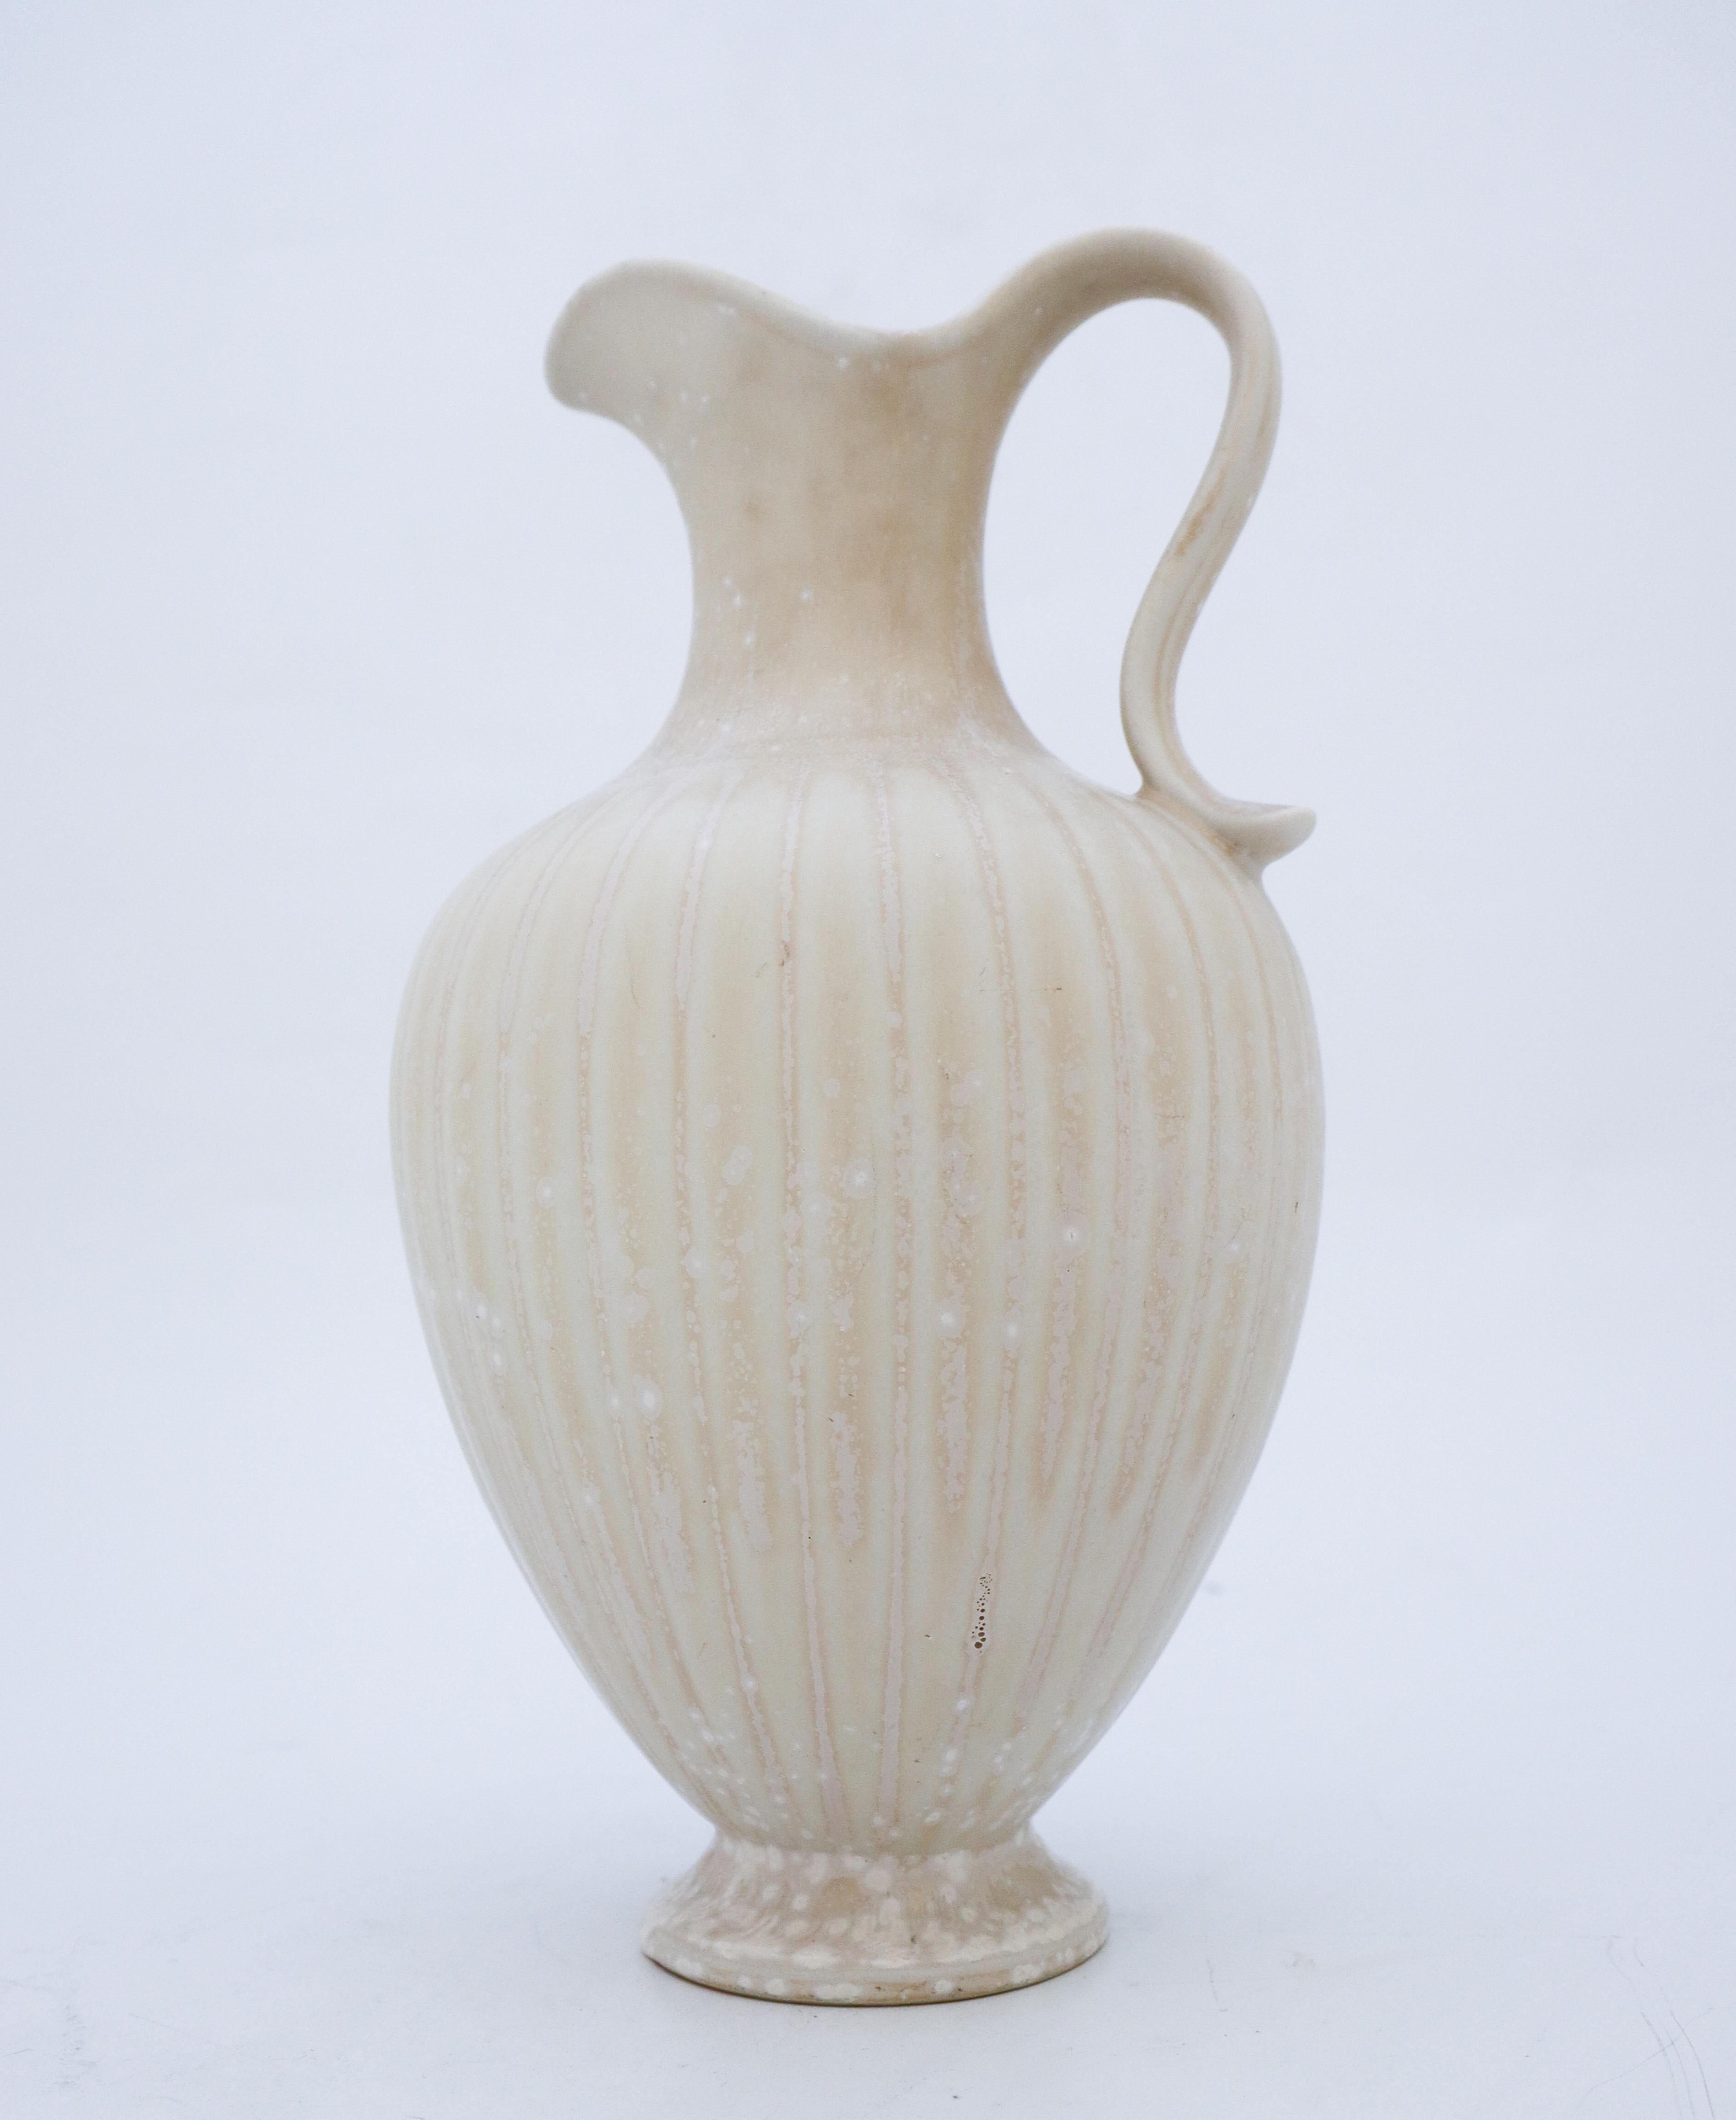 Un vase blanc moucheté conçu par Gunnar Nylund chez Rörstrand, le vase mesure 28,5 cm de haut et il est en très bon état à l'exception de quelques petites rayures. Le vase est marqué comme étant de 1ère qualité.